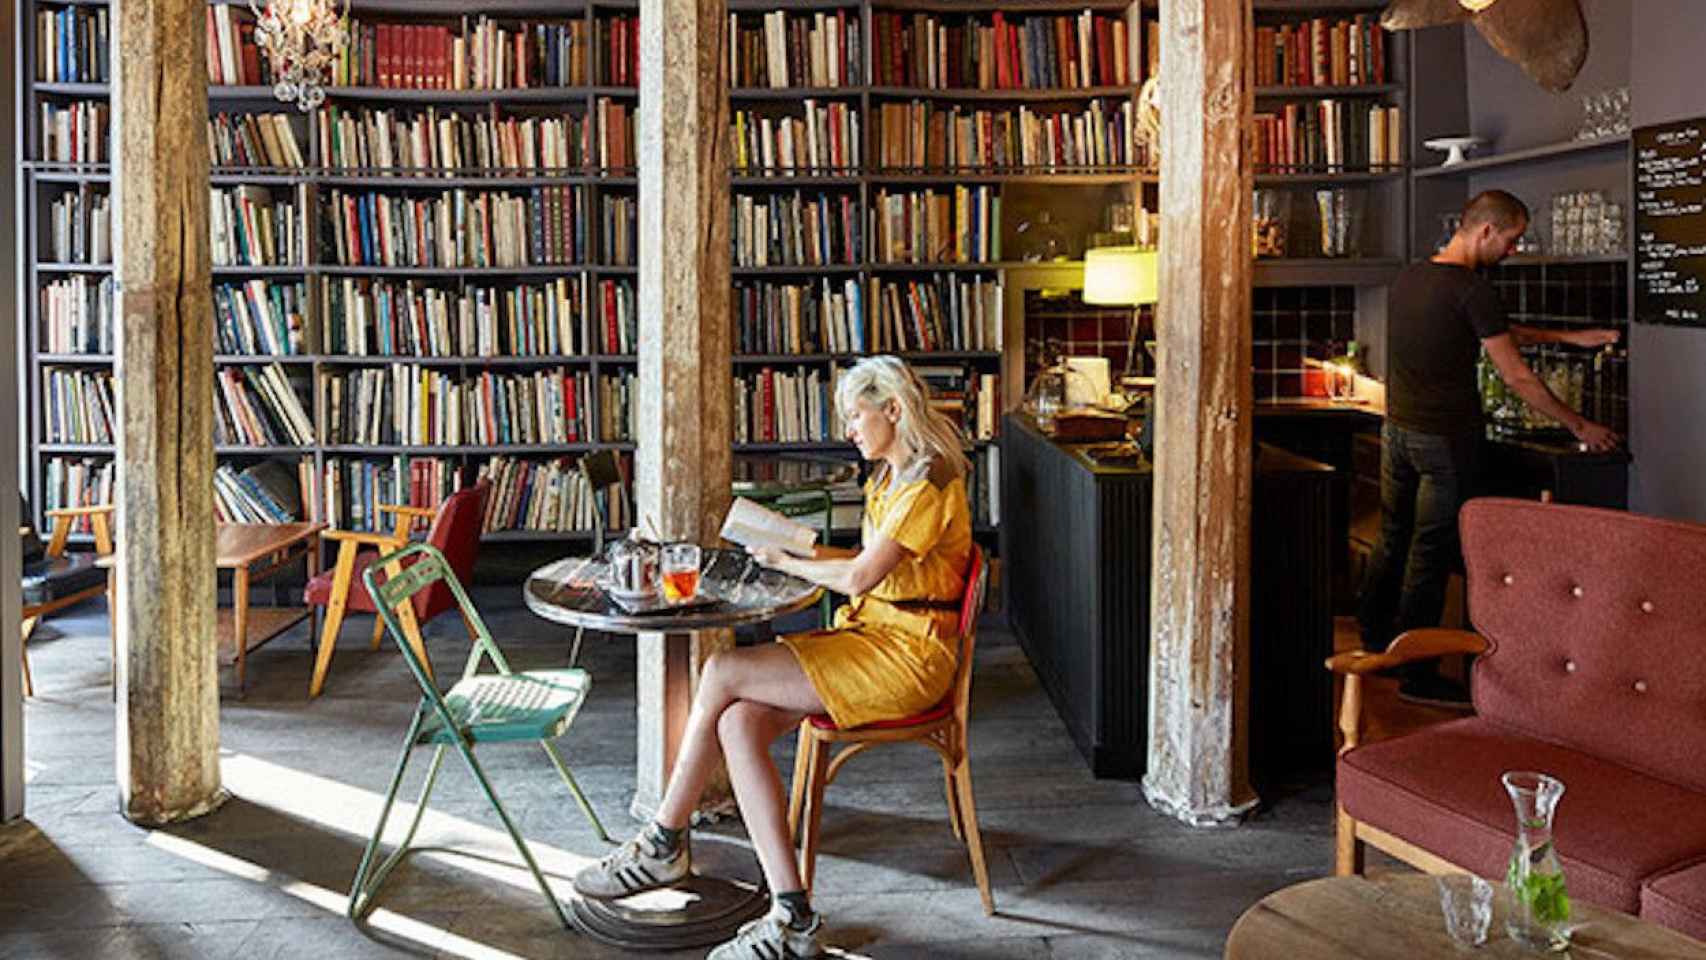 Librería-café con una persona leyendo un libro y otra en el bar / ARCHIVO